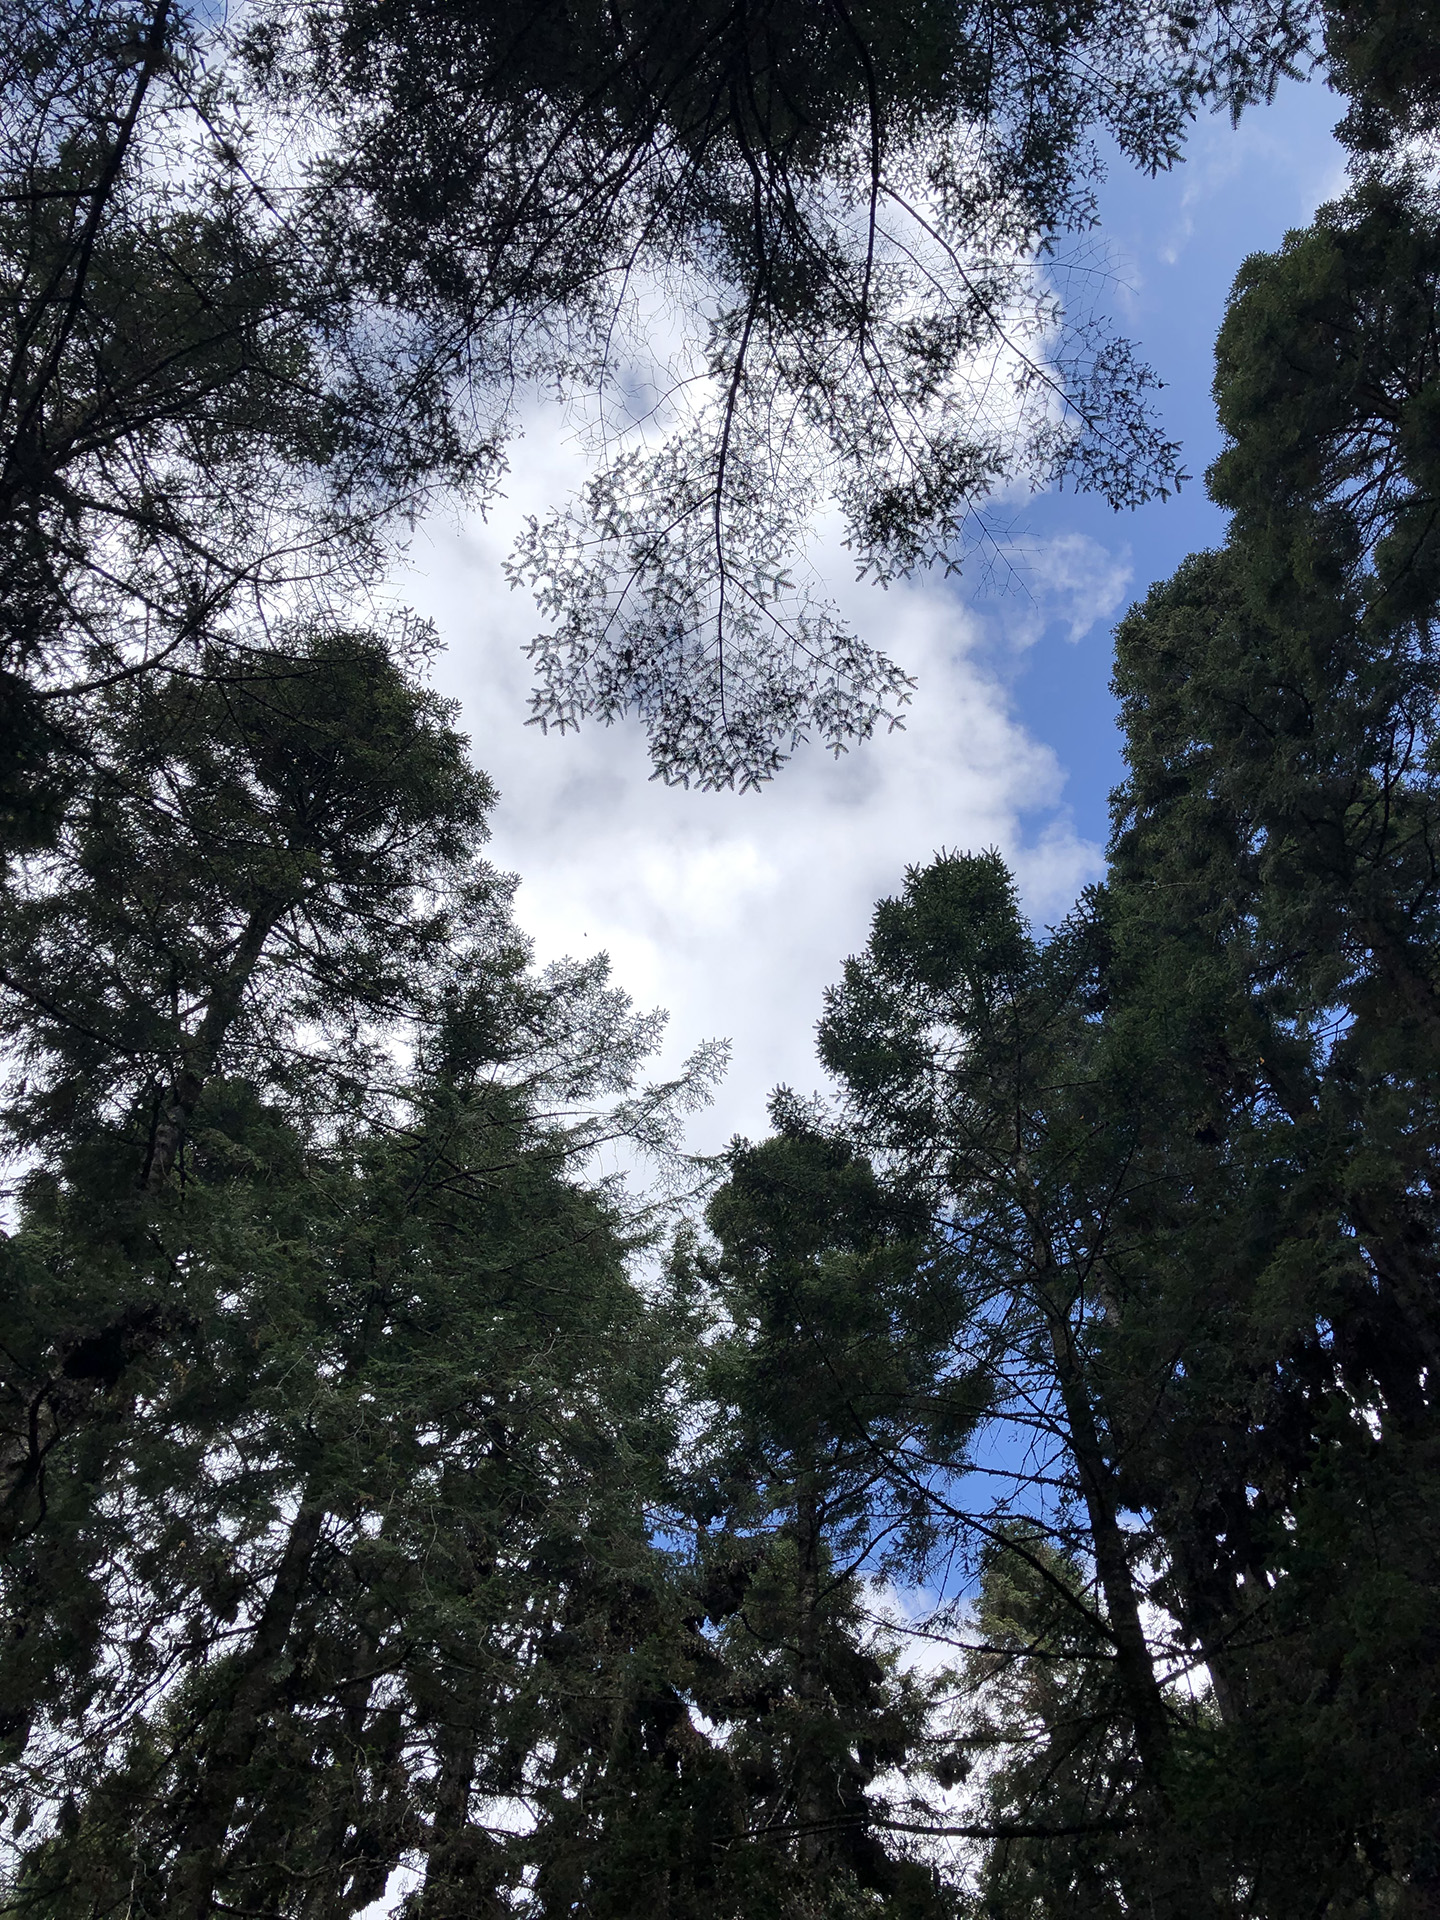 El Rosario treetops